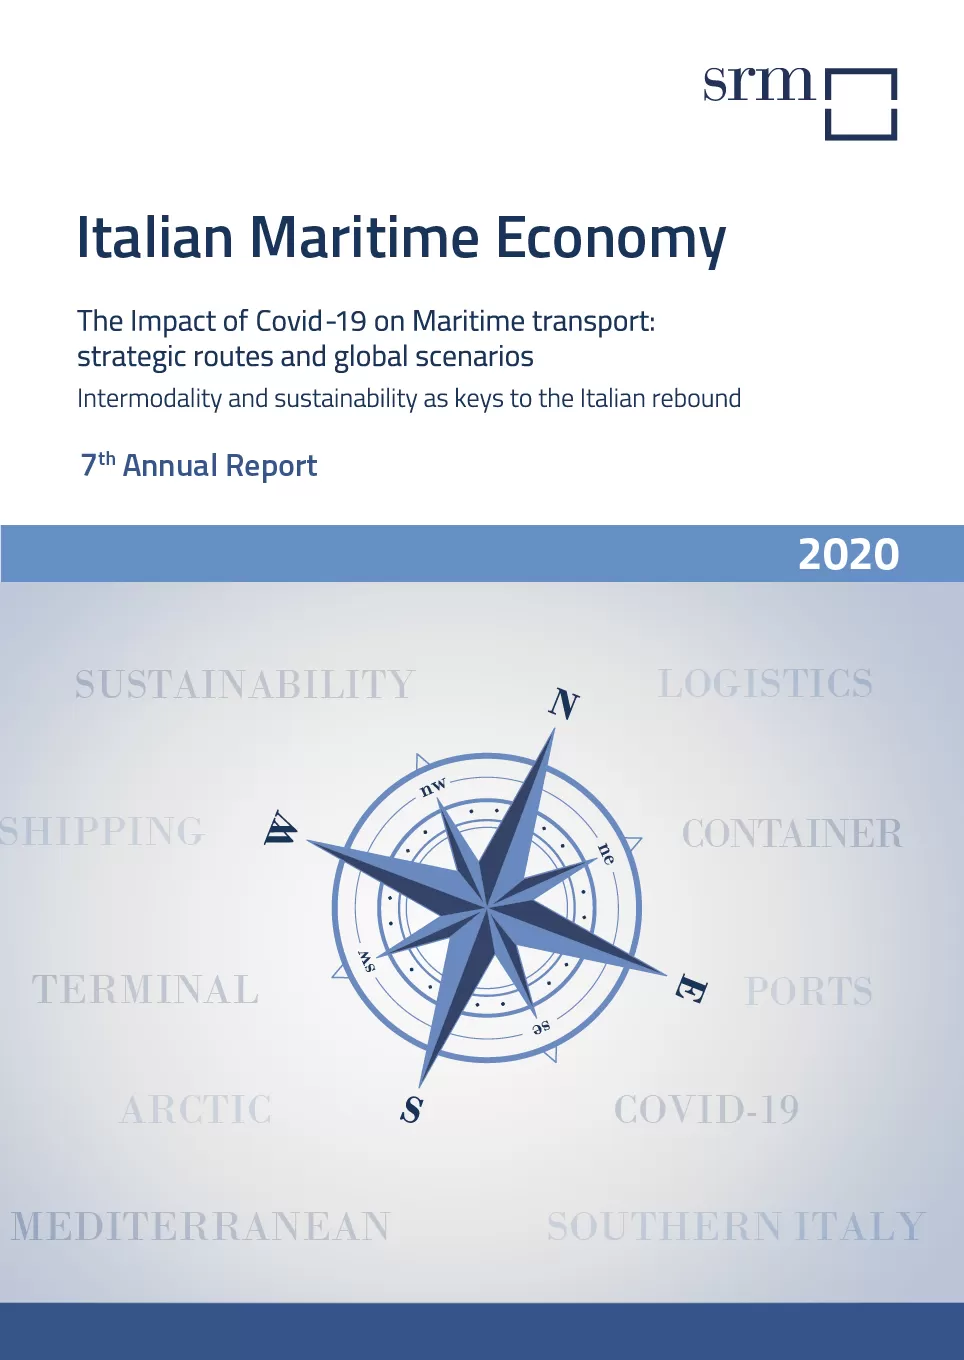 Italian Maritime Economy. L’impatto del Covid-19 sui trasporti marittimi: rotte strategiche e scenari globali. Intermodalità e sostenibilità chiavi per il rilancio italiano